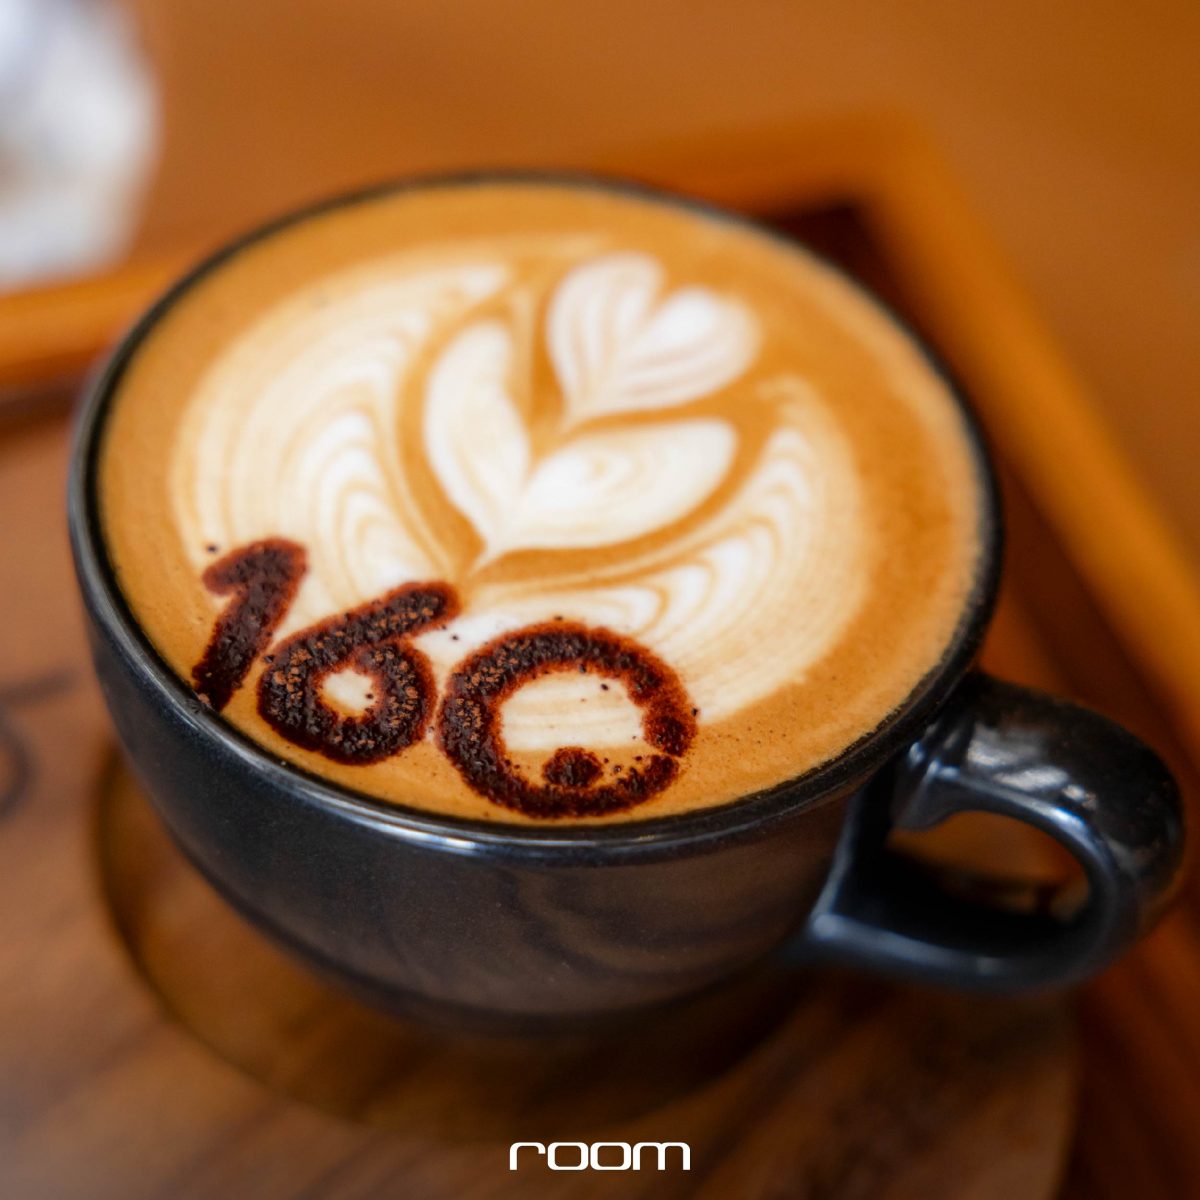 160°C pastry & specialty coffee ตีความการเปลี่ยนรูปของสสาร สู่สถาปัตยกรรมโมเดิร์นแปลกตา  